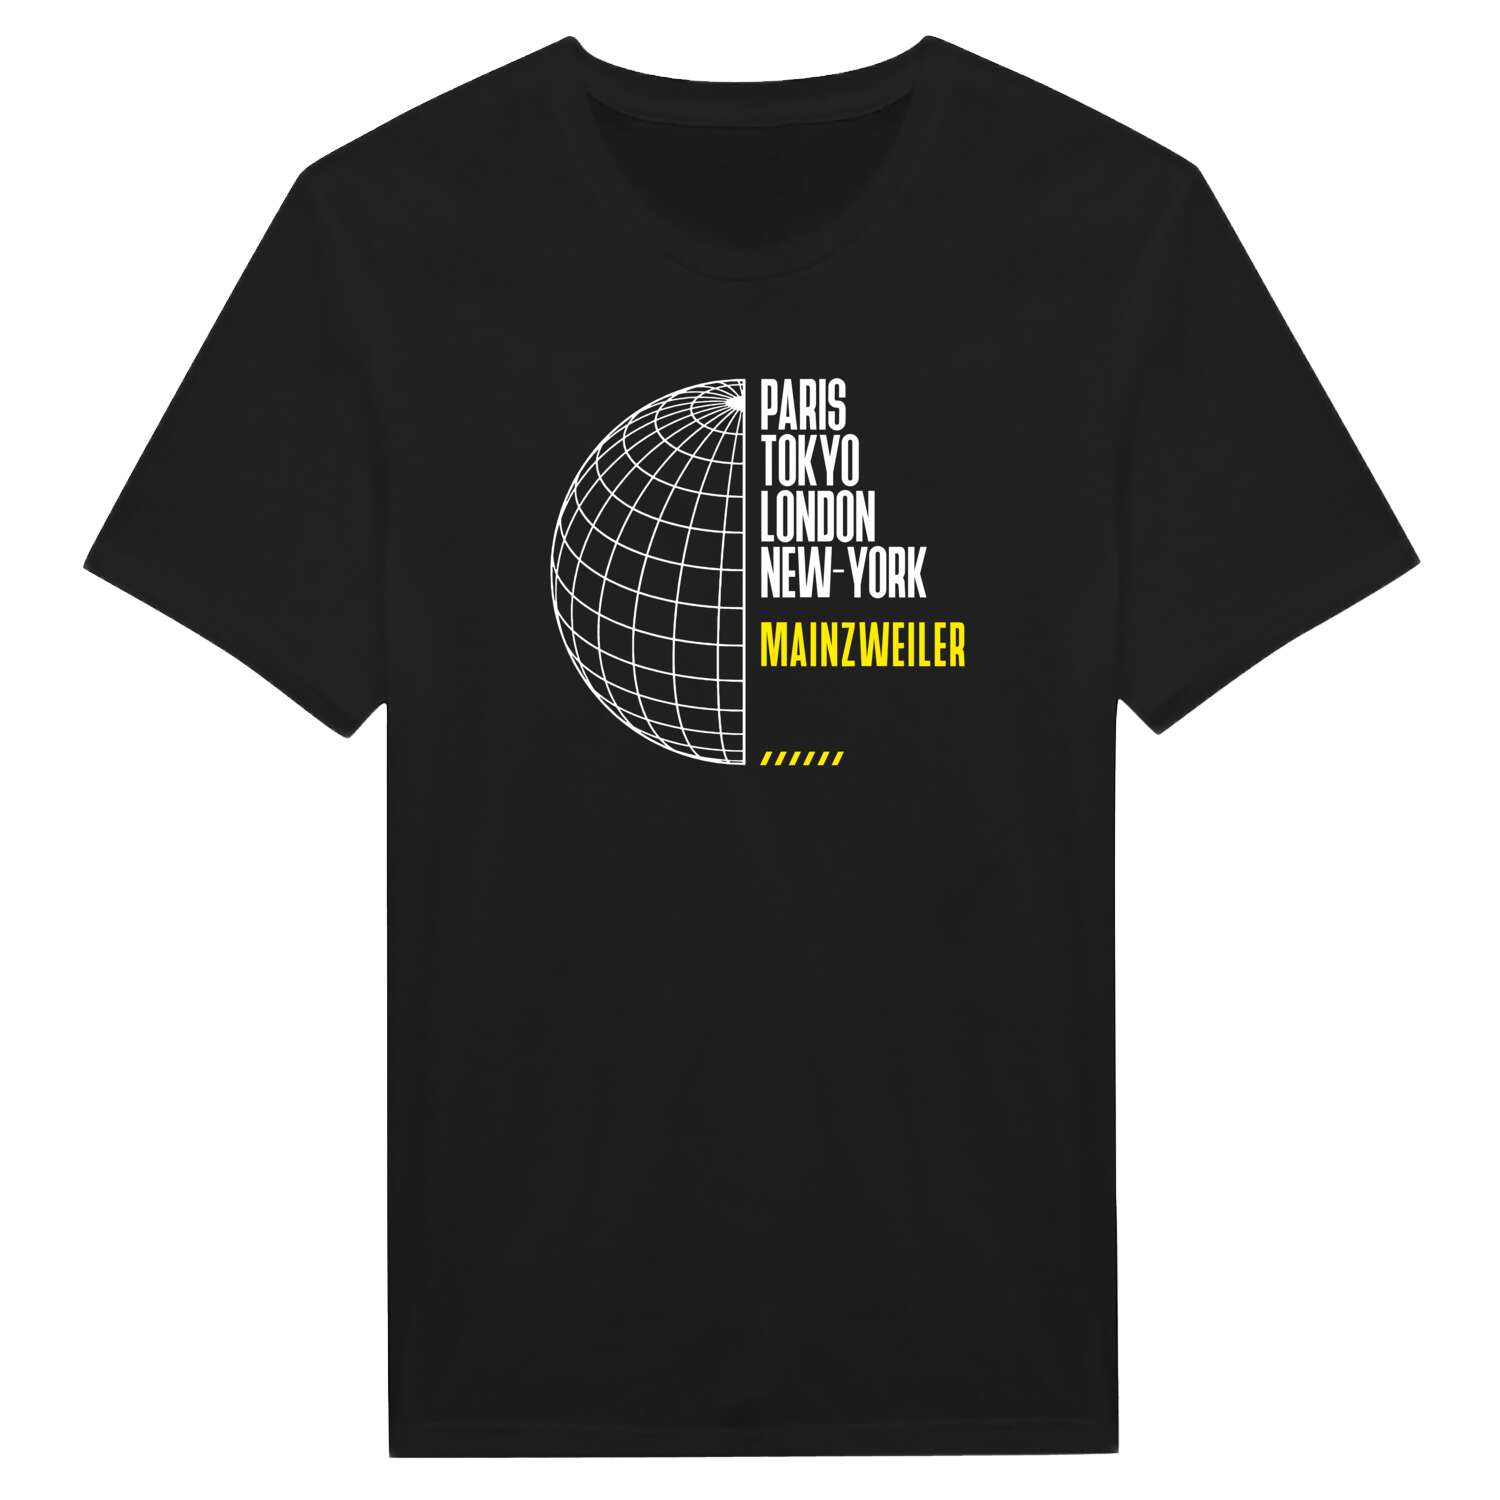 Mainzweiler T-Shirt »Paris Tokyo London«